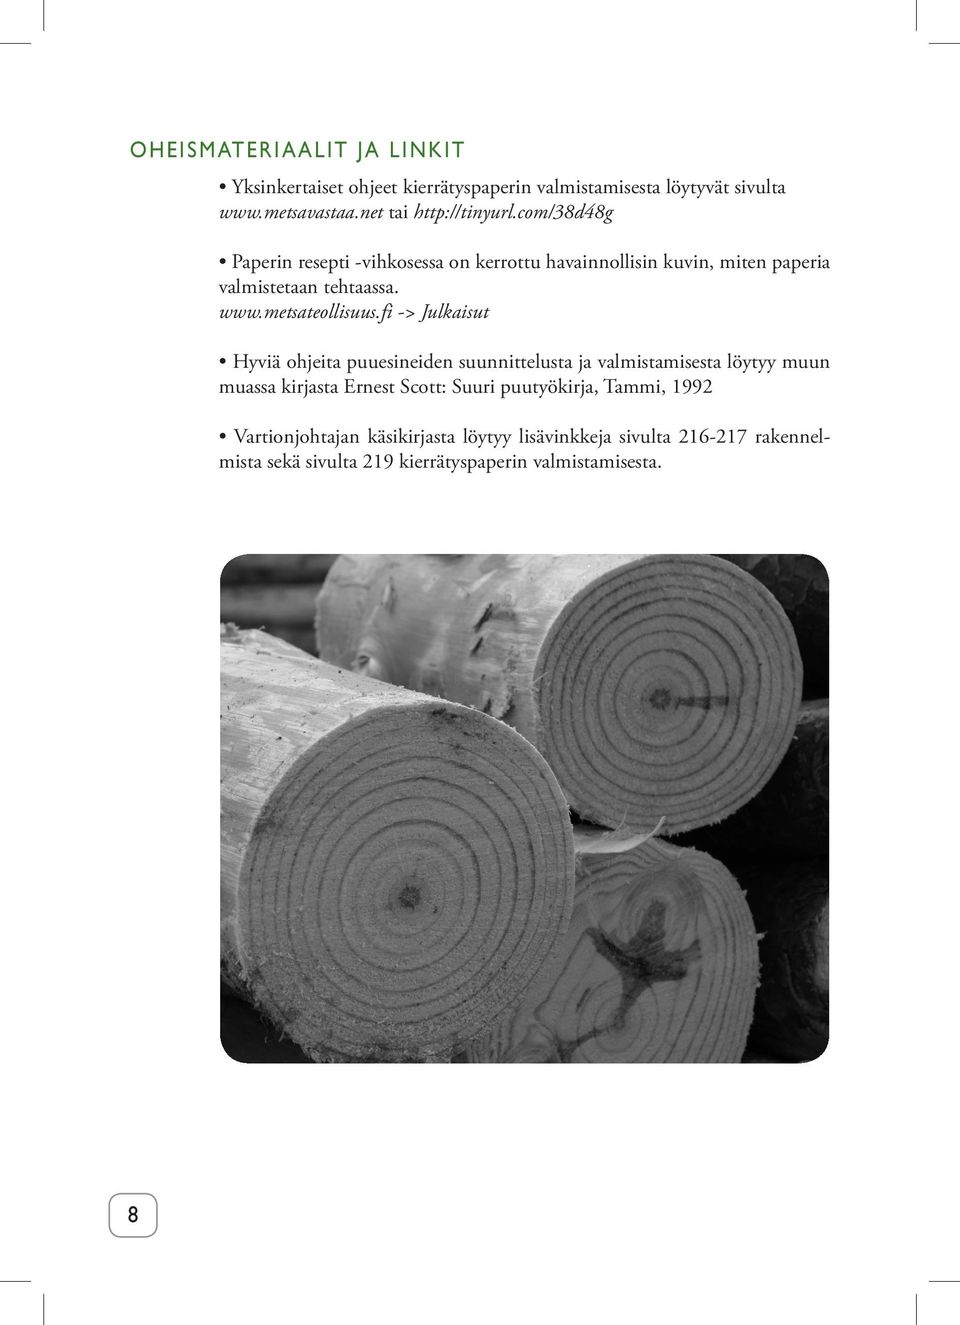 fi -> Julkaisut Hyviä ohjeita puuesineiden suunnittelusta ja valmistamisesta löytyy muun muassa kirjasta Ernest Scott: Suuri puutyökirja,